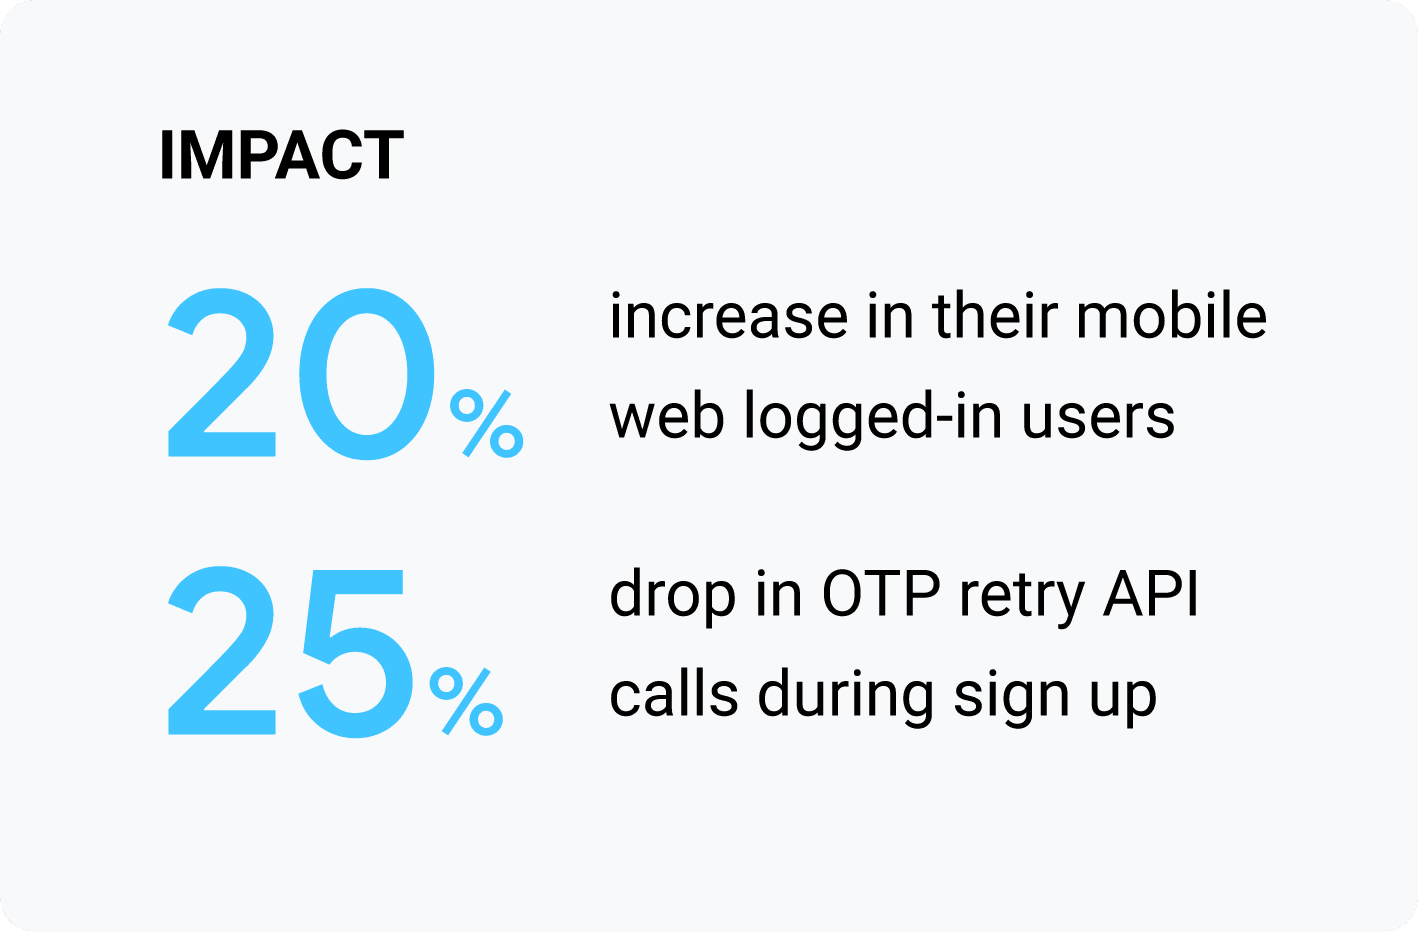 التأثير: زيادة بنسبة 20% في عدد المستخدمين الذين سجّلوا الدخول على الويب على الأجهزة الجوّالة، وانخفاض بنسبة 25% في طلبات البيانات من واجهة برمجة التطبيقات لإعادة المحاولة باستخدام كلمة المرور لمرة واحدة (OTP) خلال فترة الاشتراك.